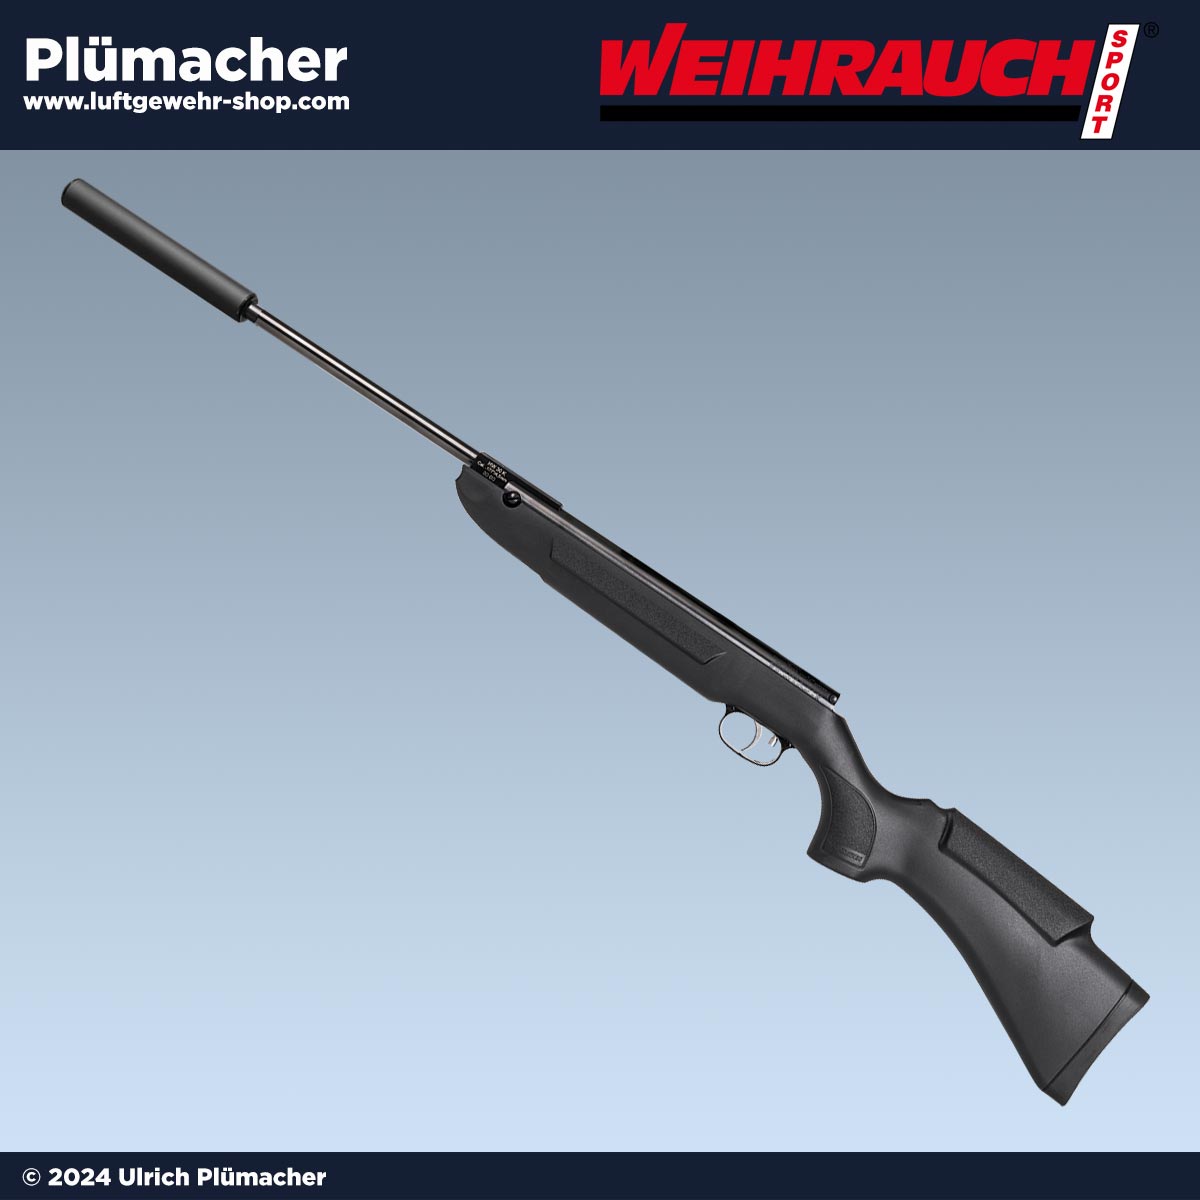 Bild von Weihrauch HW 30 S: Leichtes Luftgewehr mit Schwarzem Allwetterschaft und Schalldämpfer